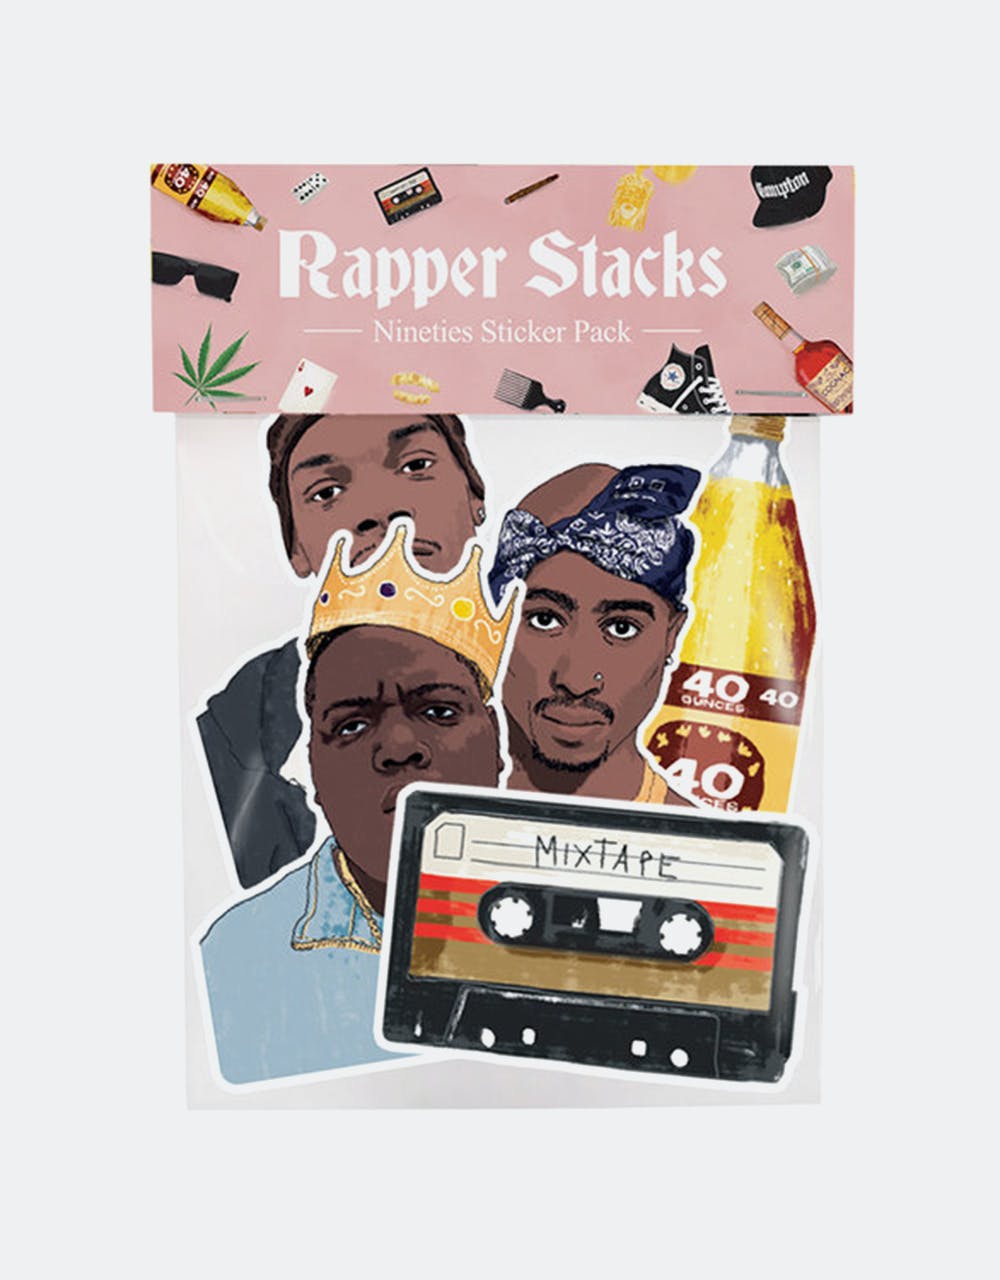 Rapper Stacks Nineties Sticker Pack